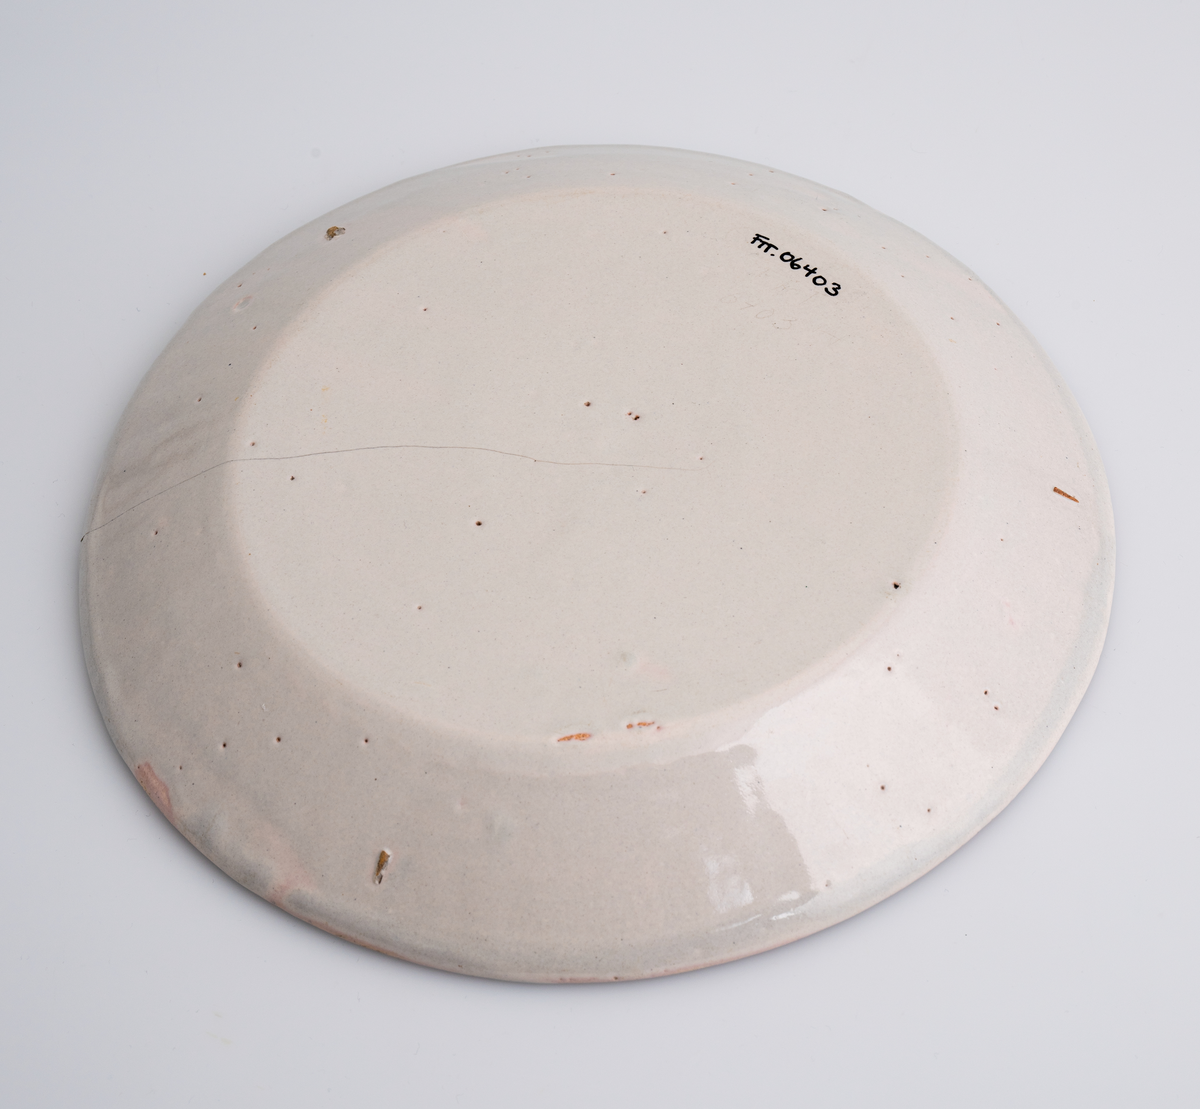 En flat tallerken av keramikk/porselen. Den har bly- og tinnglasur og er hvit på farge. Tallerkenen er rund med en relativt høy og skrånende kant. Den har ikke dekor utover glasuren. Tallerkenen er en av 11 identiske tallerkener som trolig er fra tidlig på 1700-tallet.
